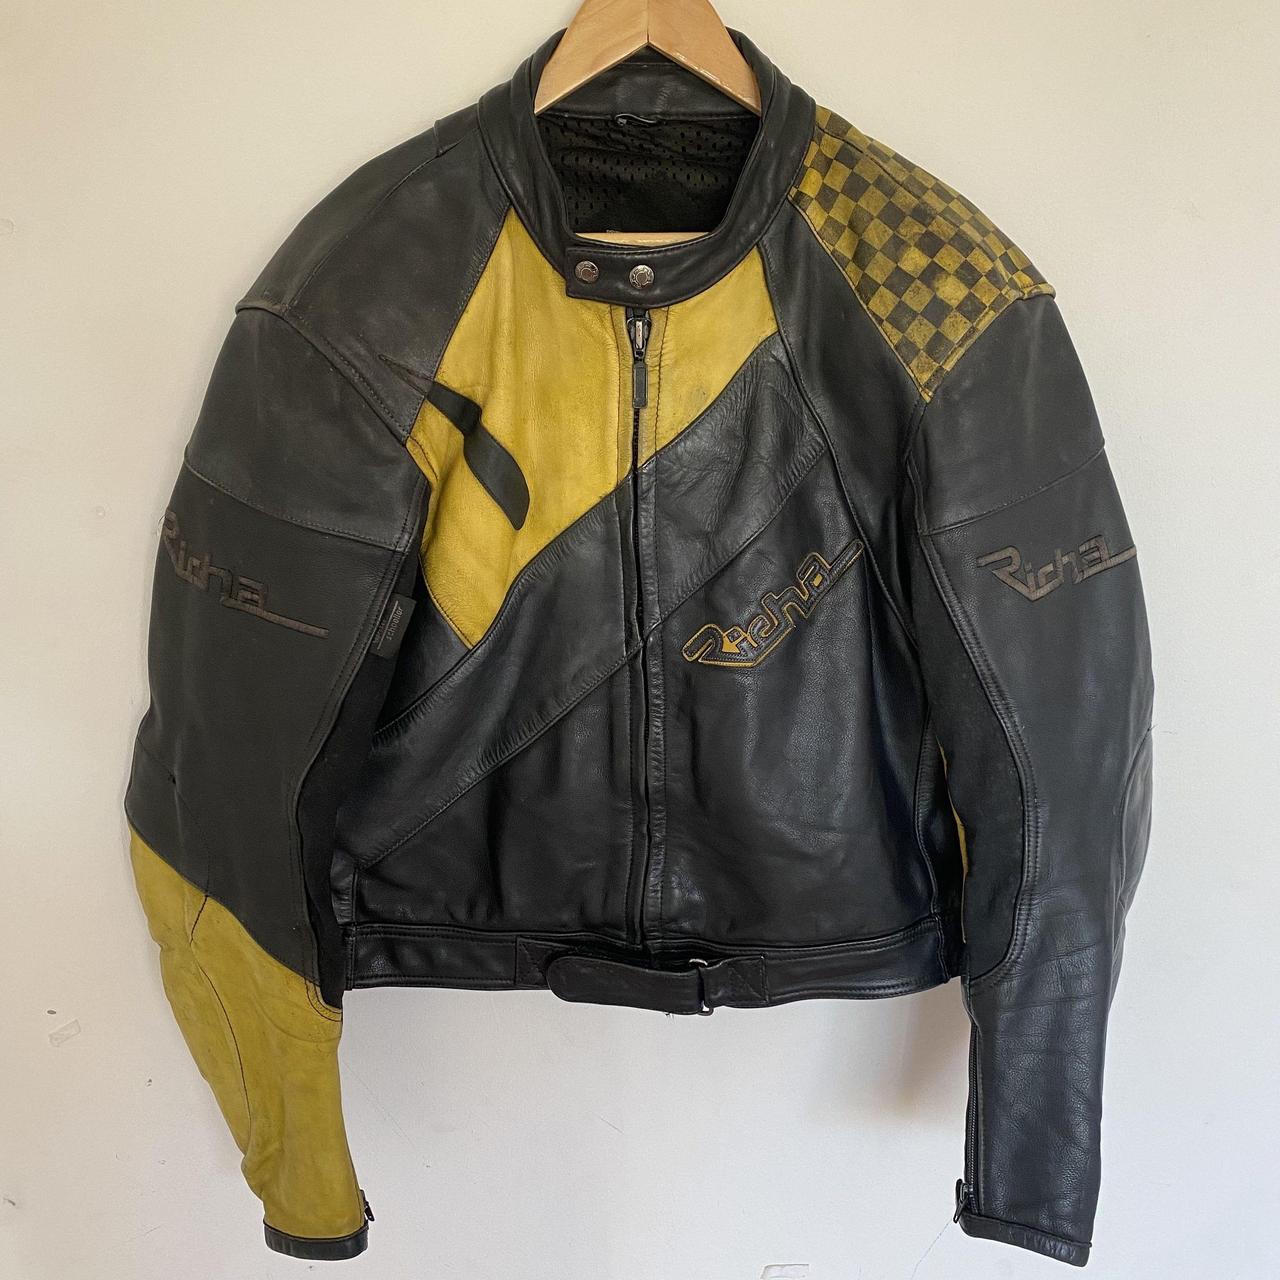 Vintage Richa Leather Motorcycle Jacket, Yellow &... - Depop